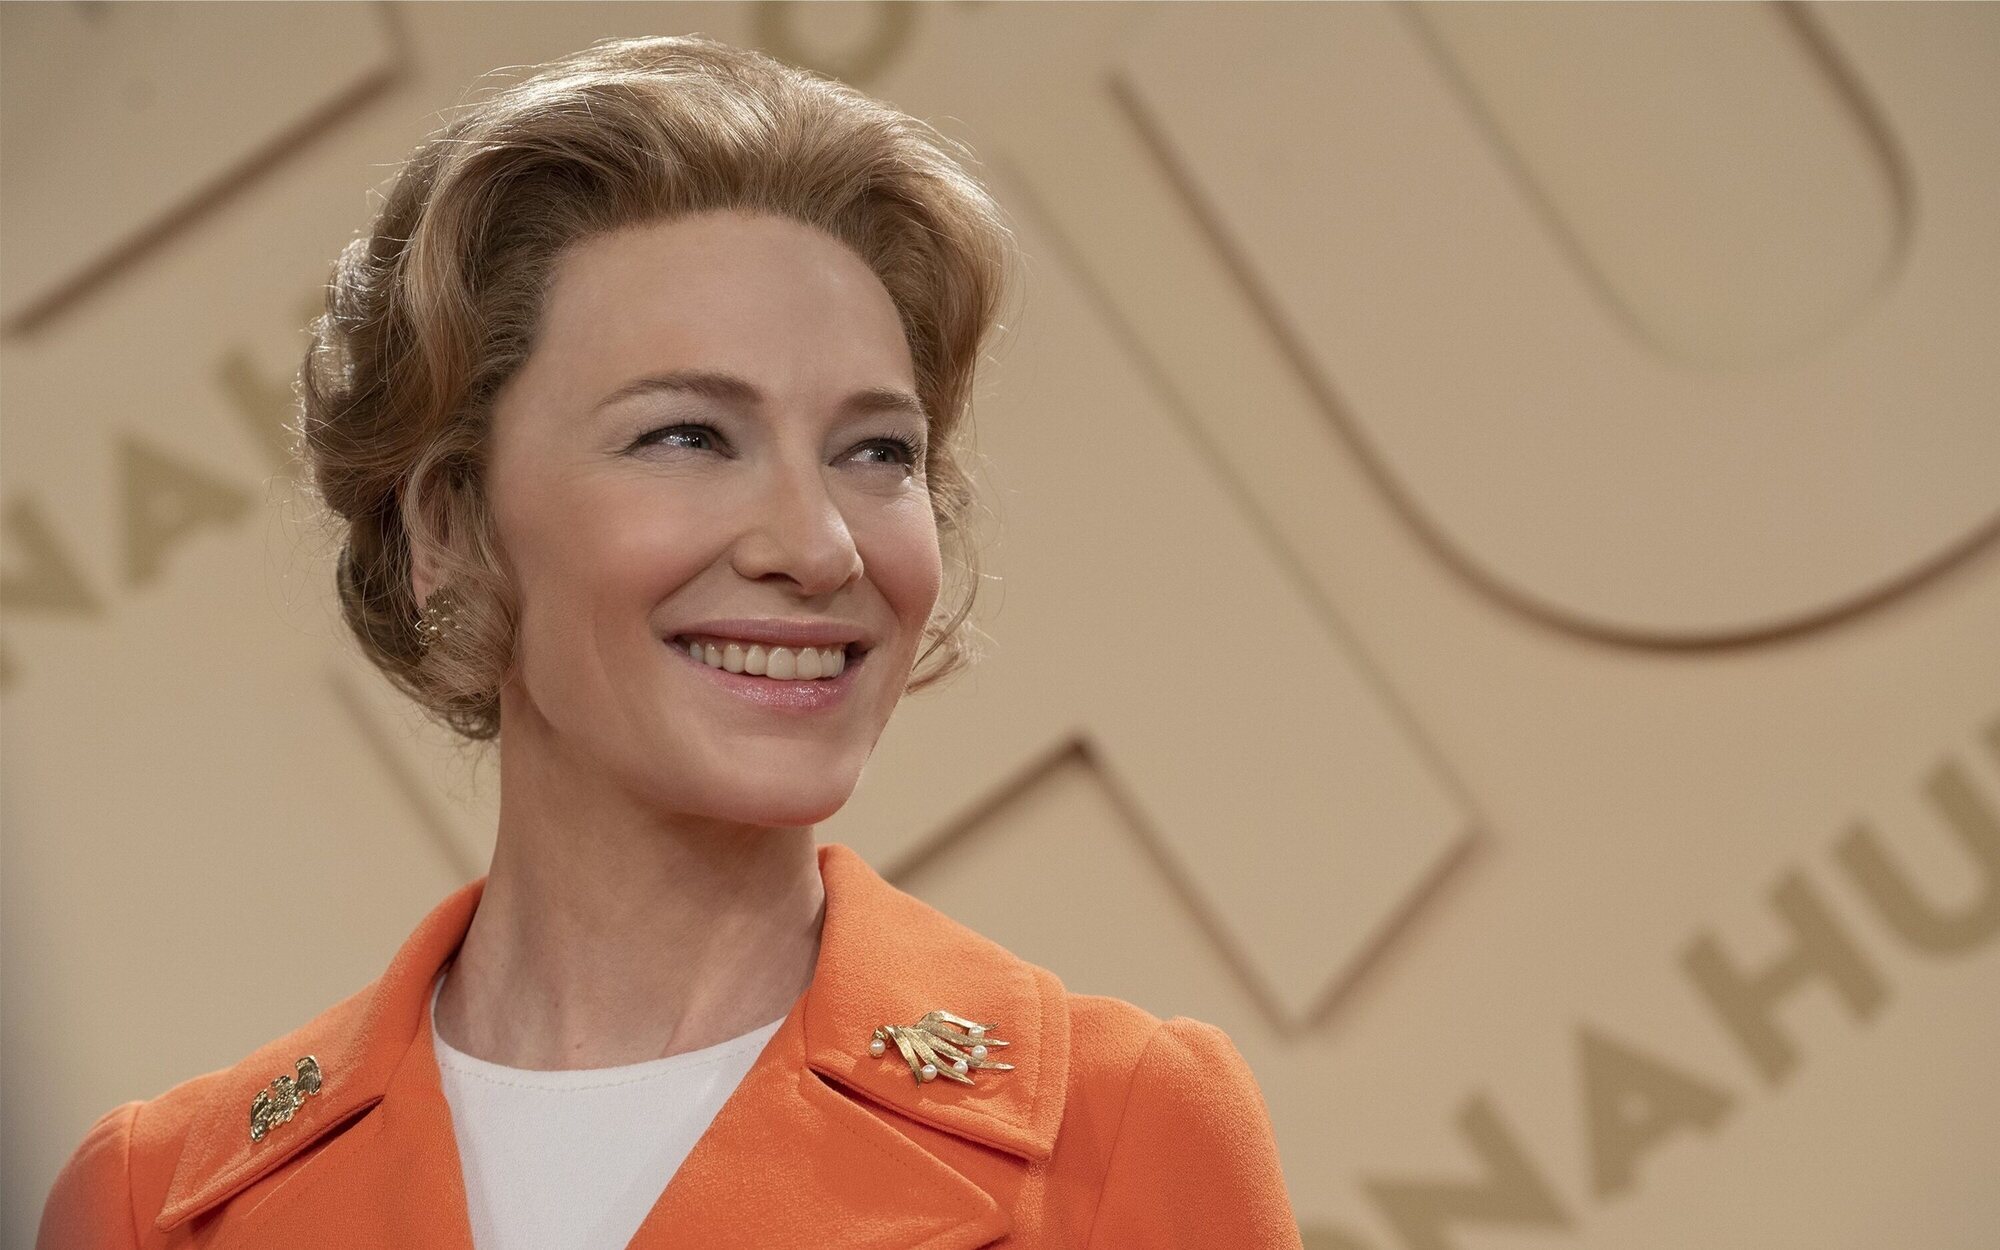 Los Goya estrenan su premio internacional y otorgan a Cate Blanchett el galardón de 2022